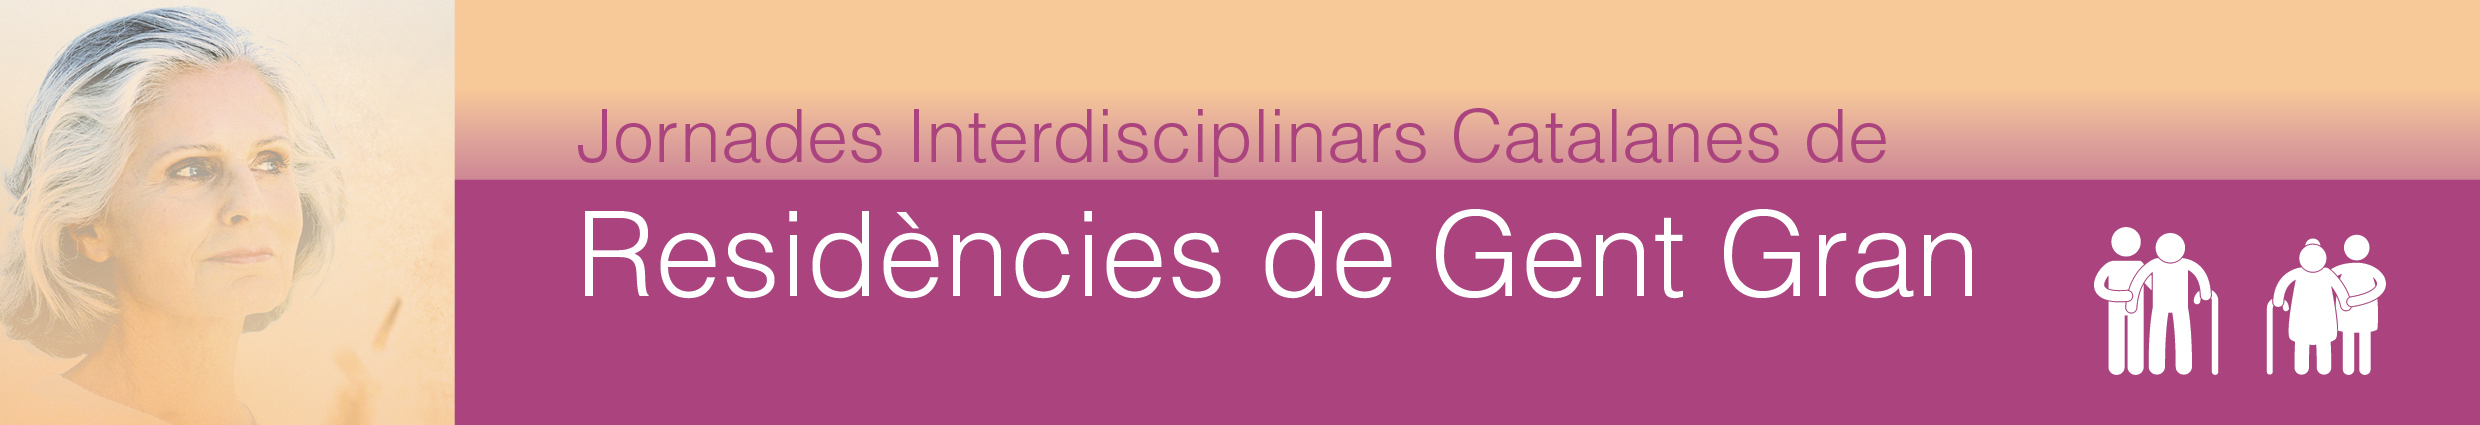 Jornades Interdisciplinars Catalanes de Residencies de Gent Gran